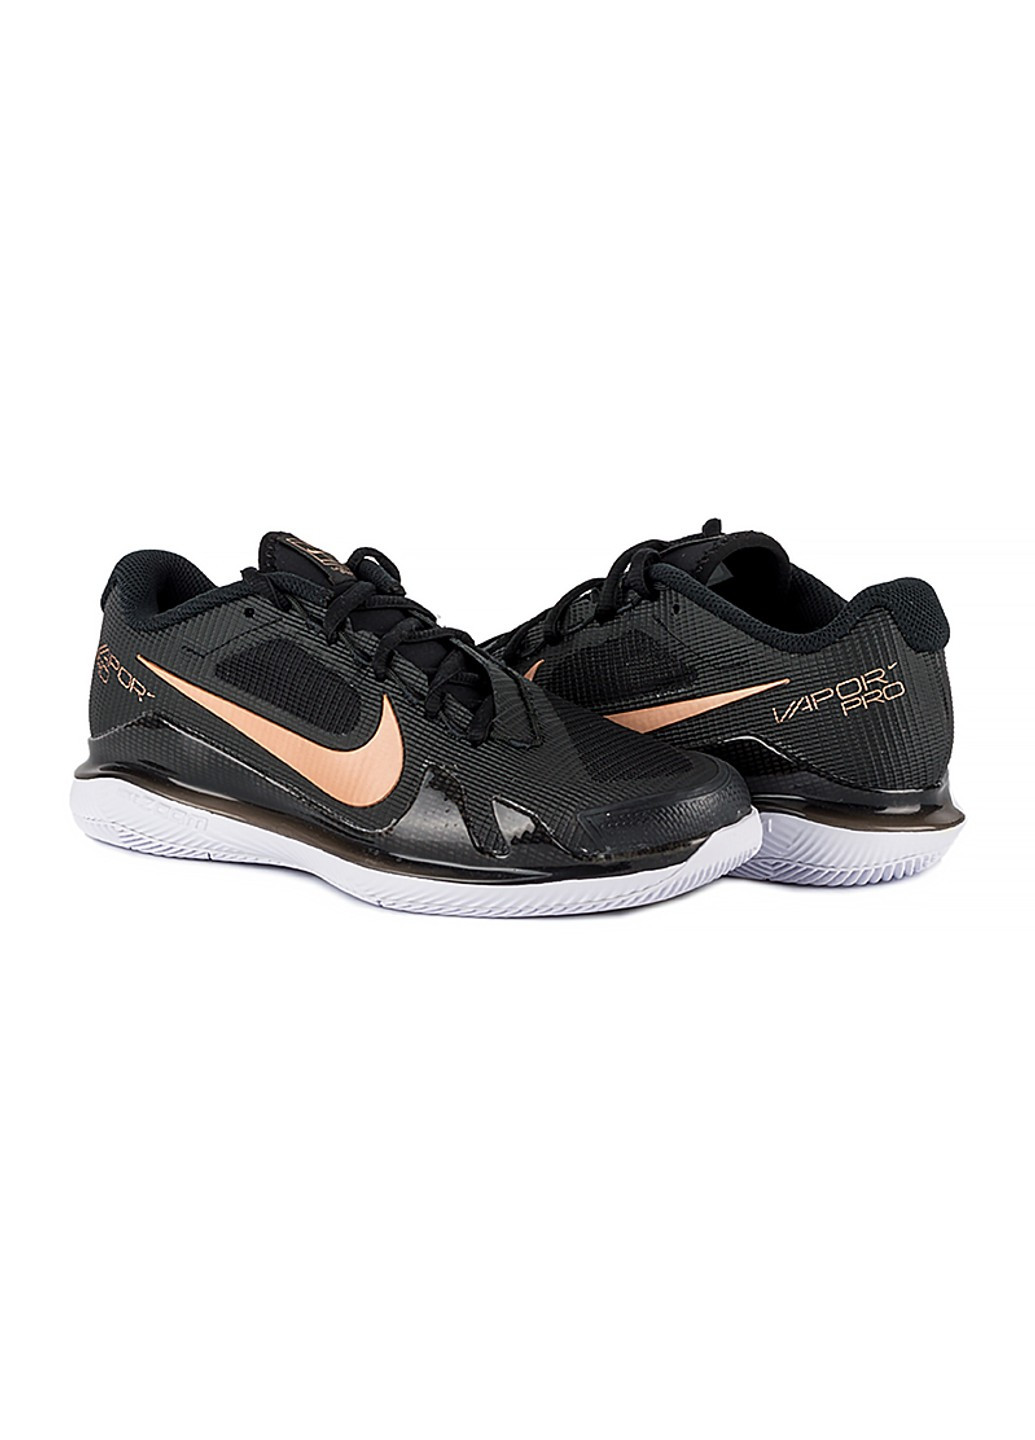 Черные демисезонные кроссовки zoom vapor pro hc Nike